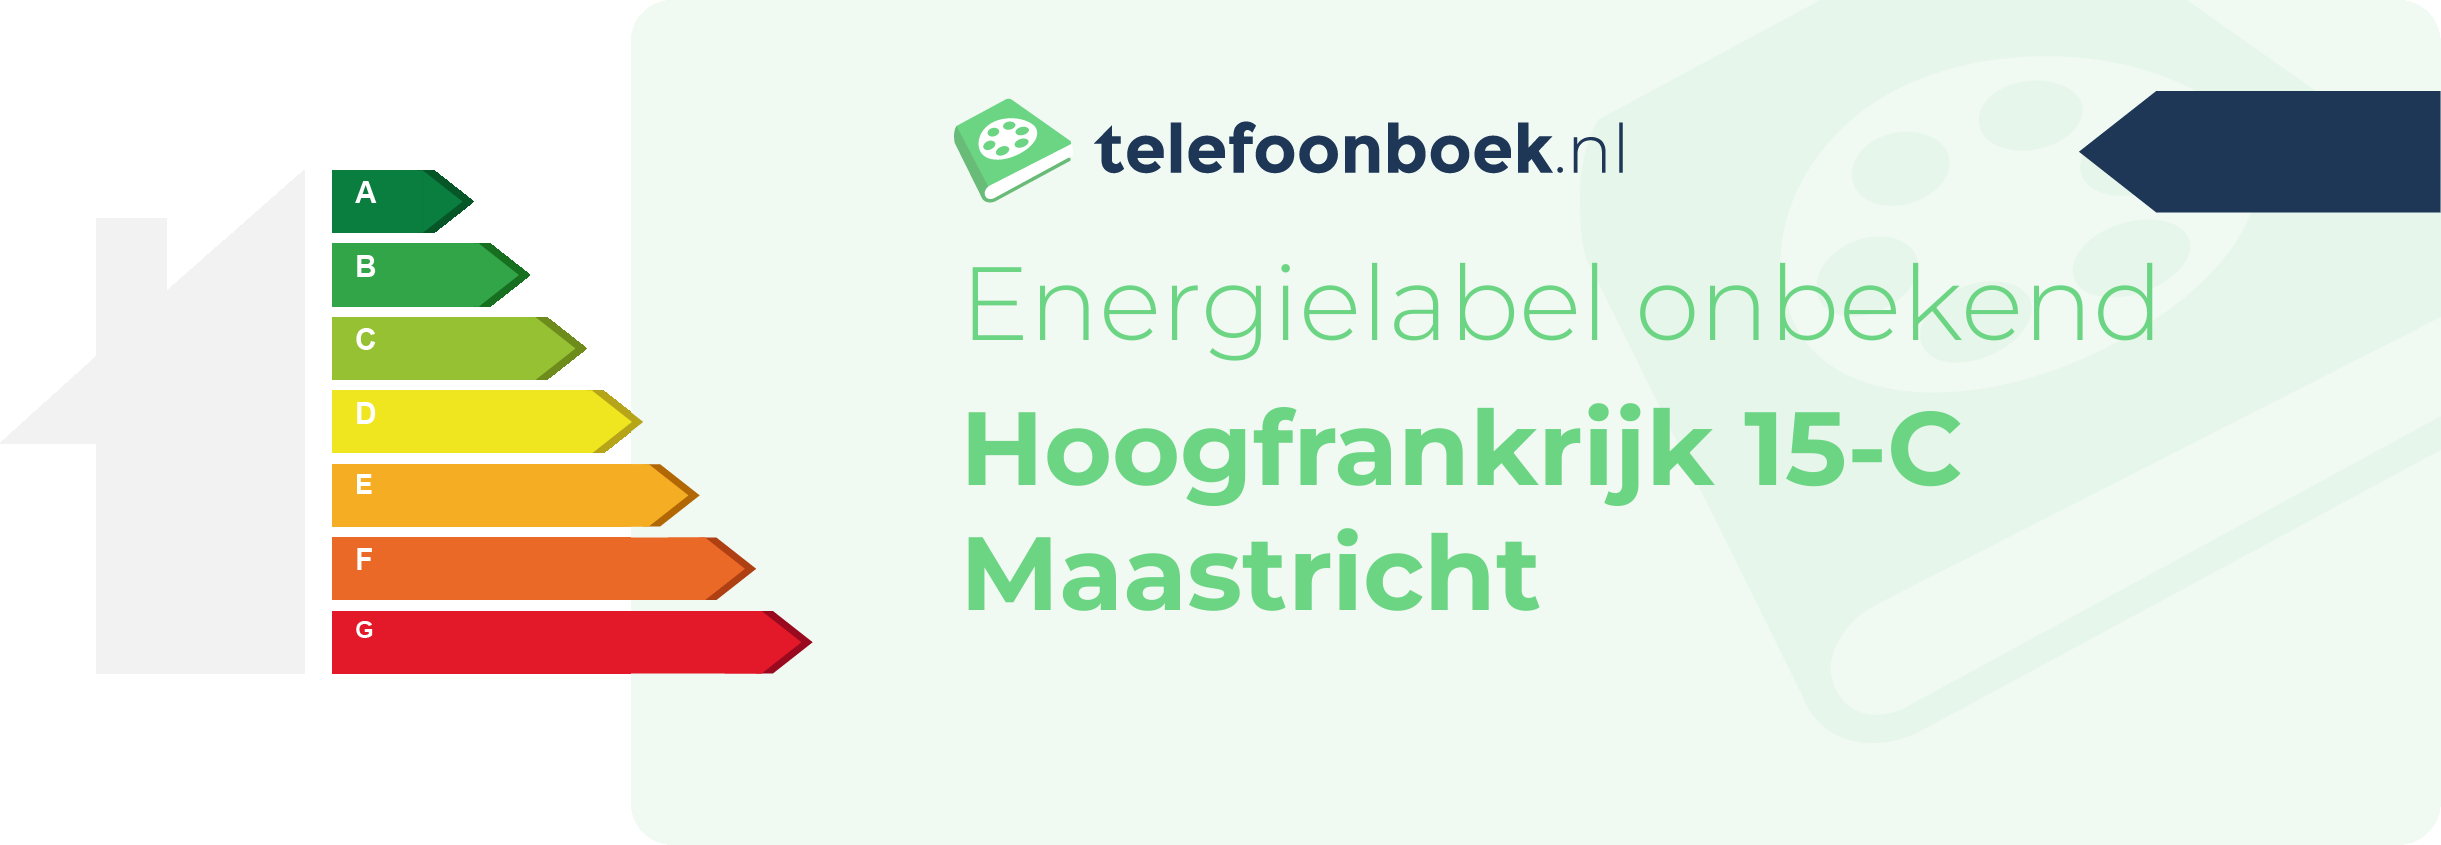 Energielabel Hoogfrankrijk 15-C Maastricht